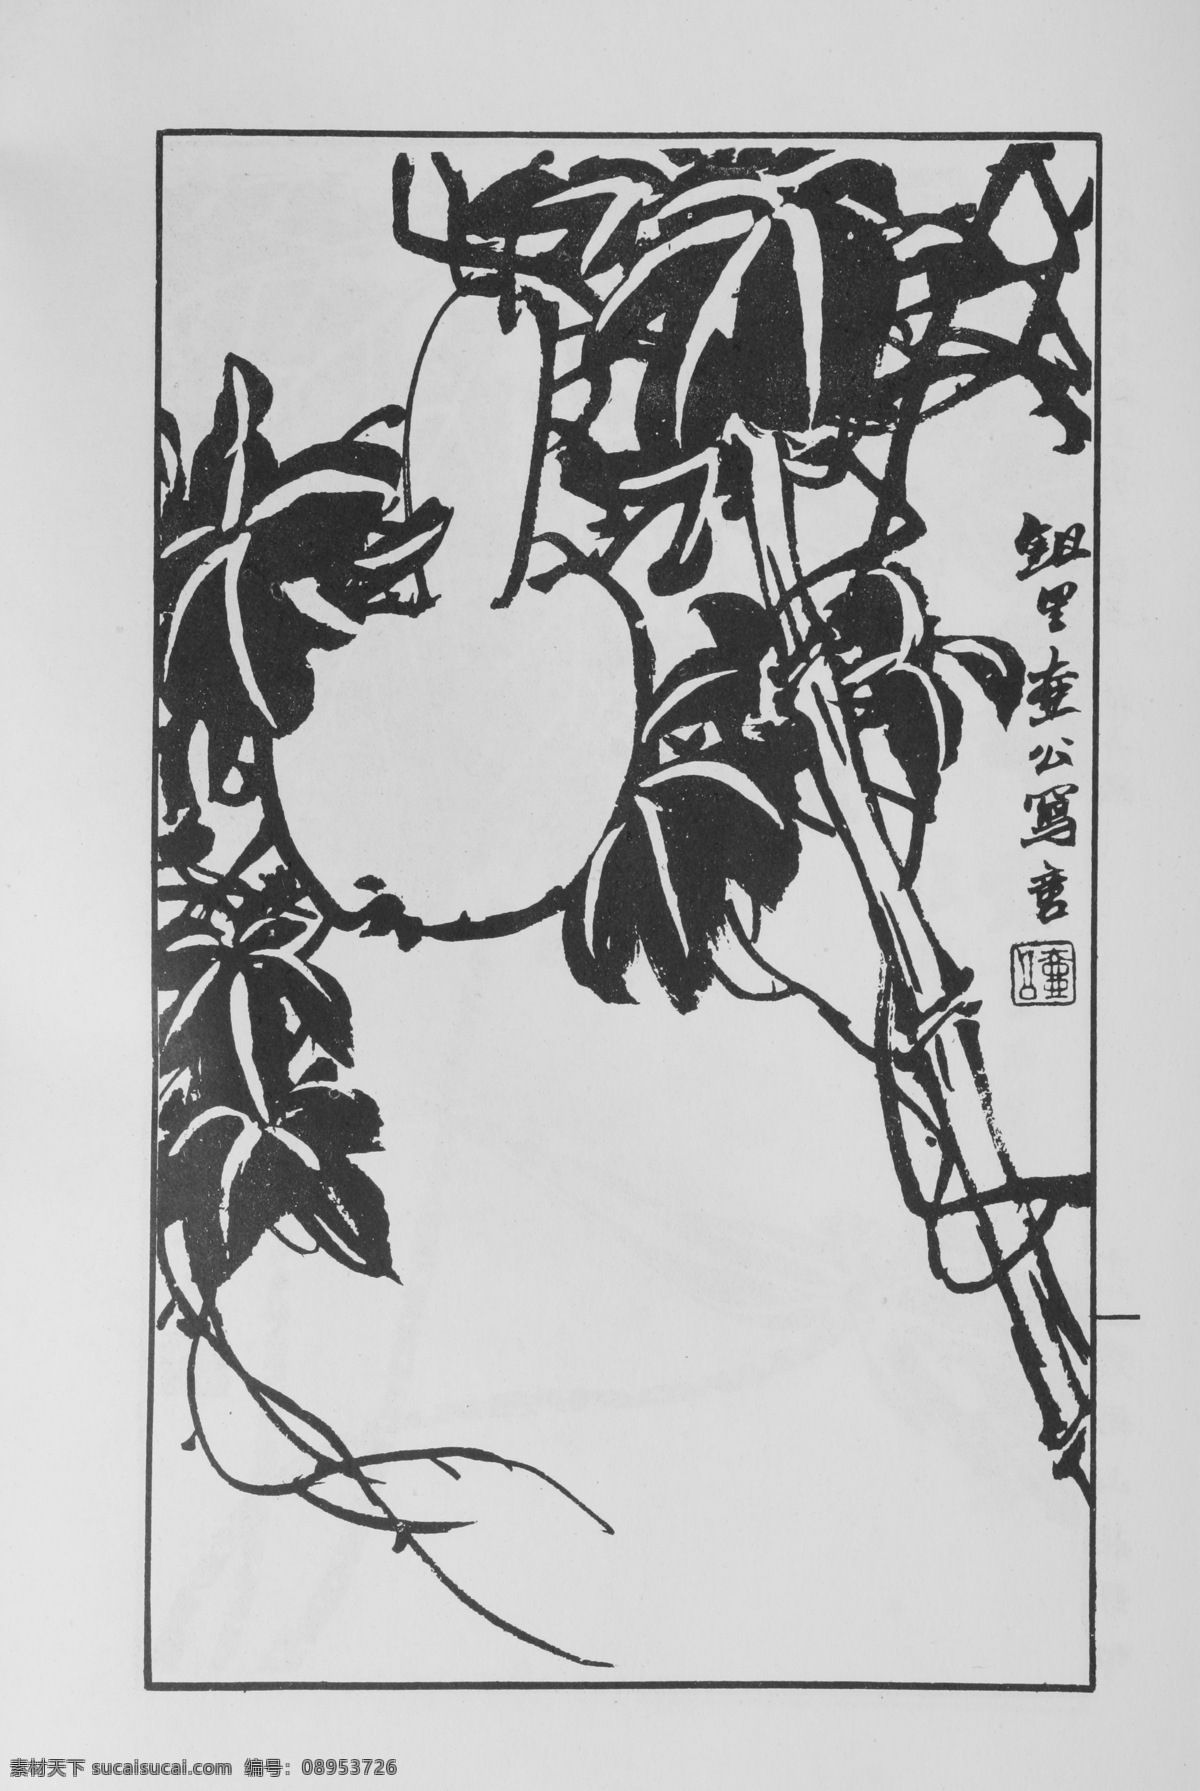 花卉画 中国画 当代 名画 大观 正 集 81 设计素材 花鸟画篇 中国画篇 书画美术 灰色